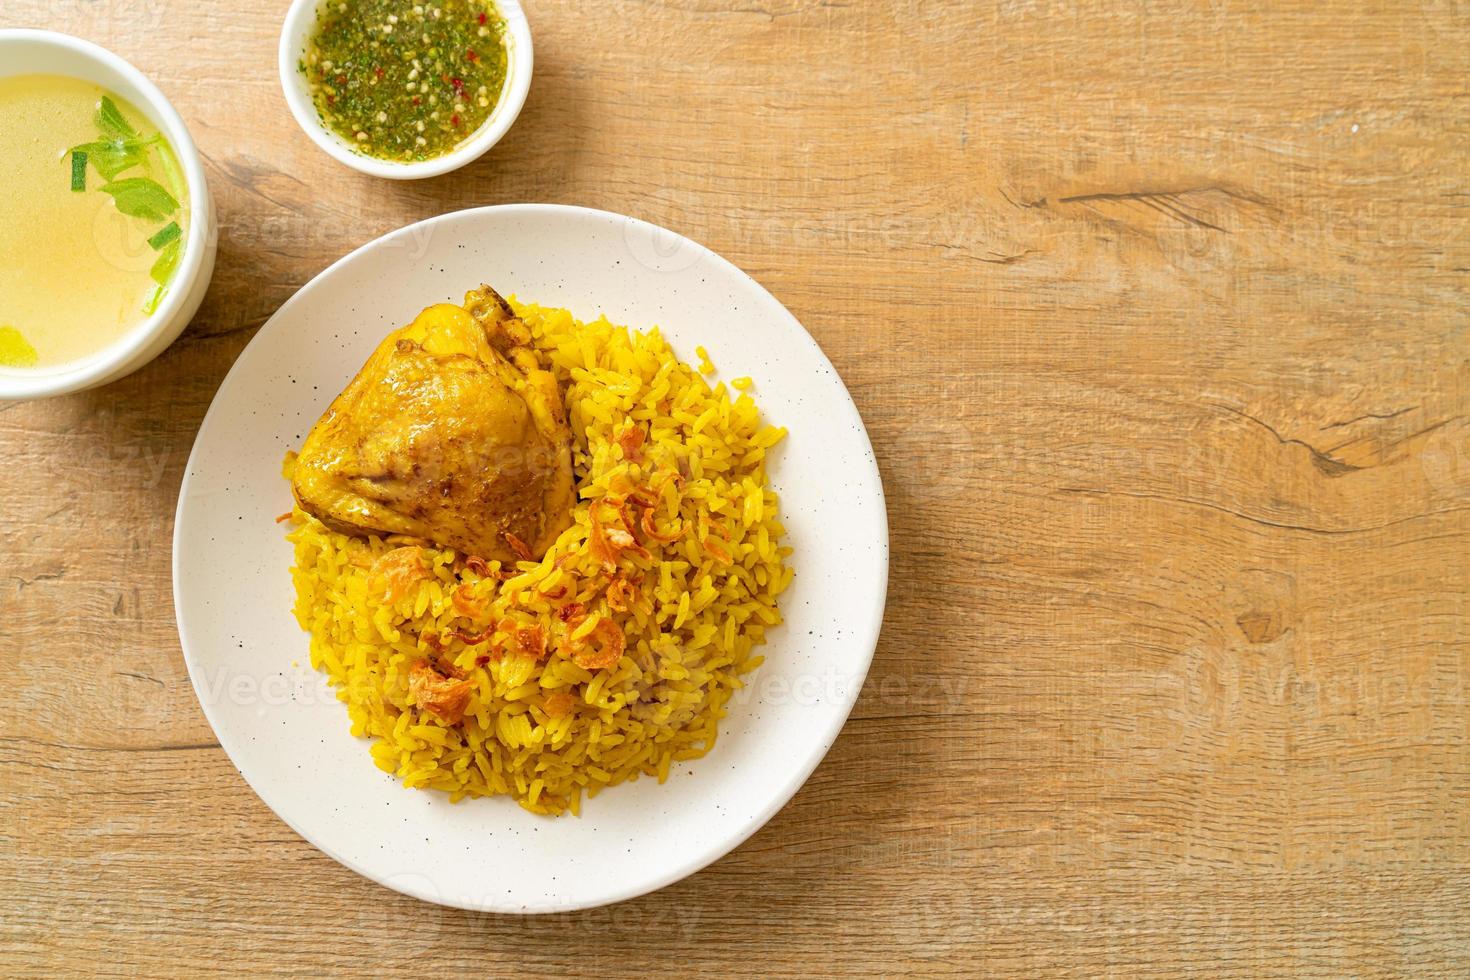 biryani de pollo o arroz al curry y pollo - versión tailandesa-musulmana del biryani indio, con arroz amarillo fragante y pollo foto